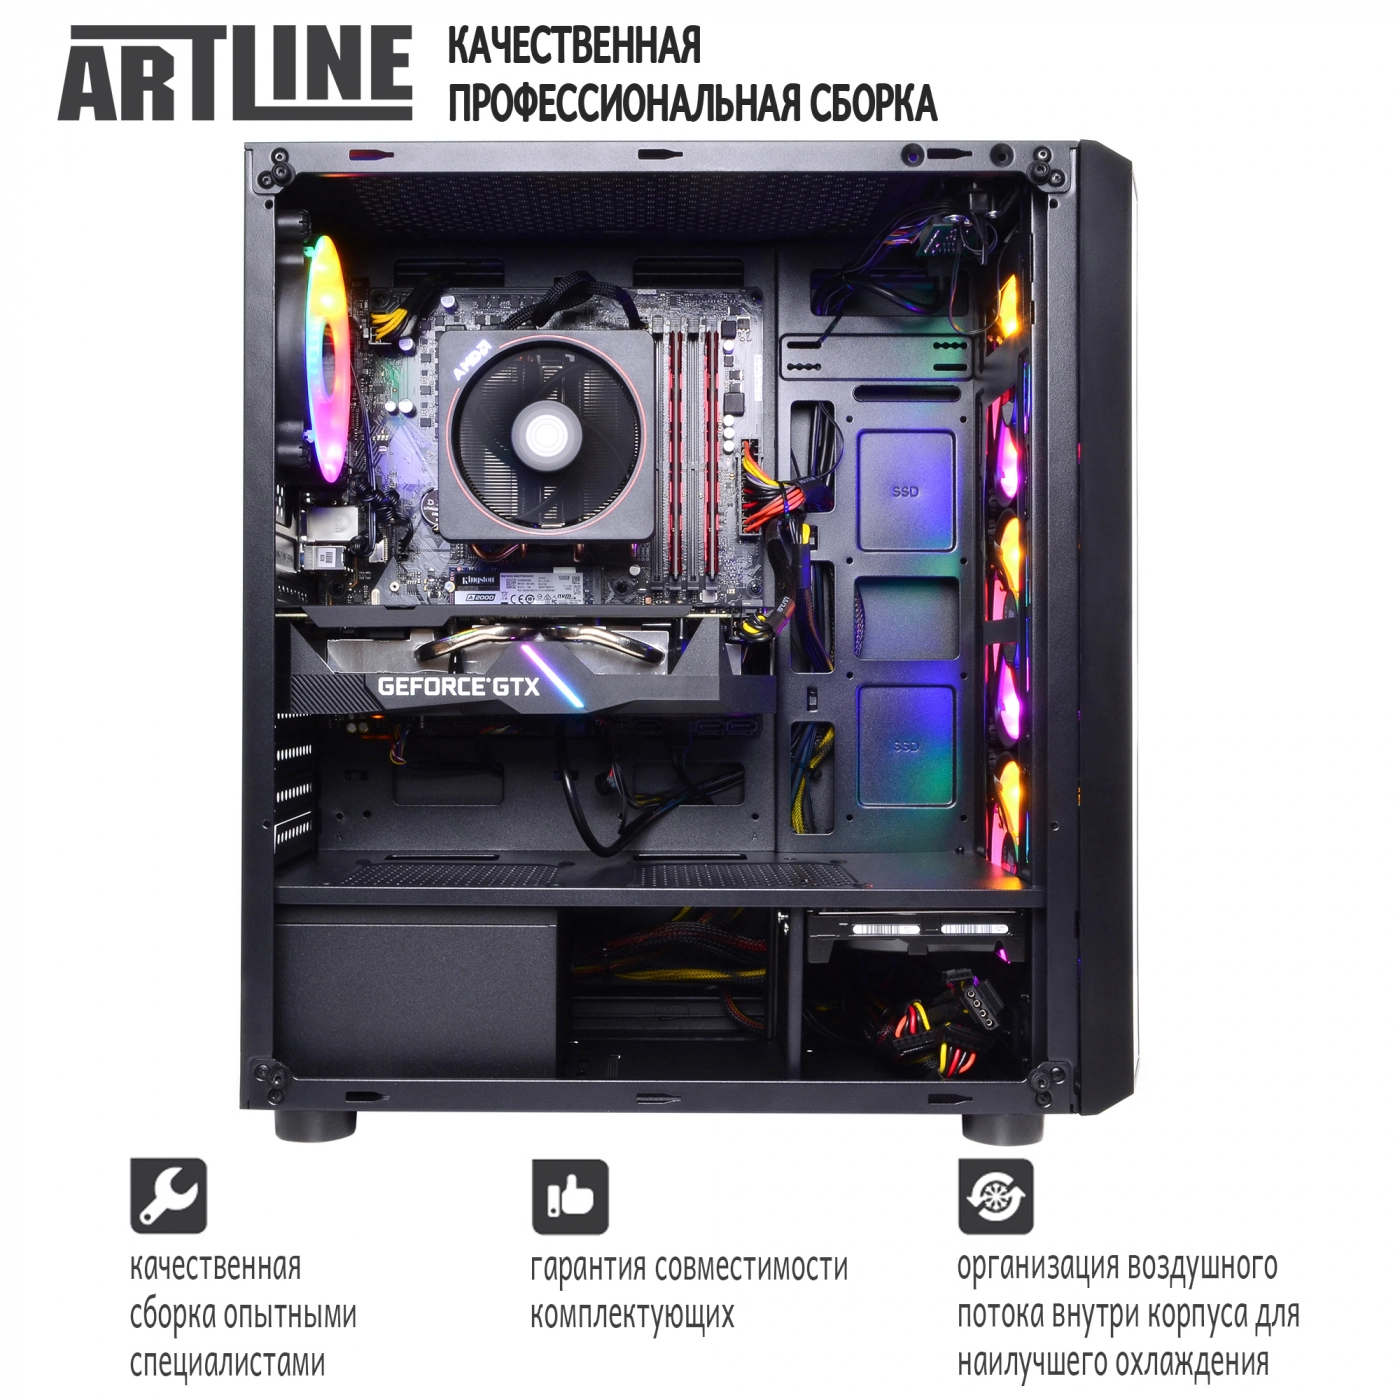 Купить Компьютер ARTLINE Gaming X43v015 - фото 8